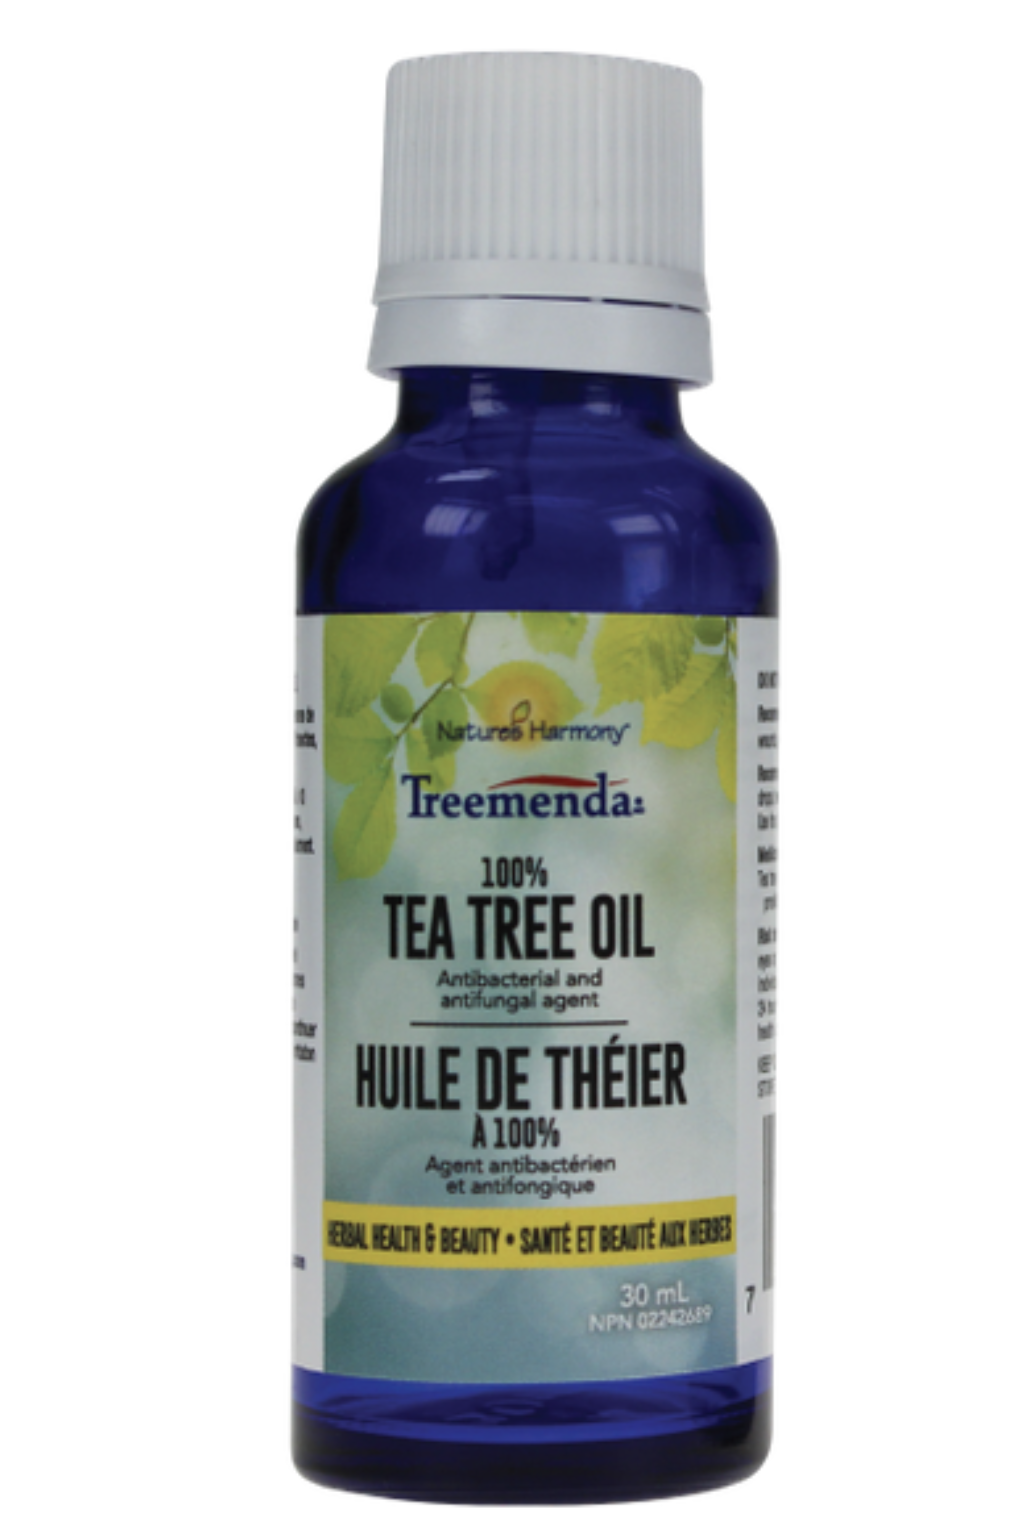 Nature's Harmony Treemenda Tea Tree Oil 30ml